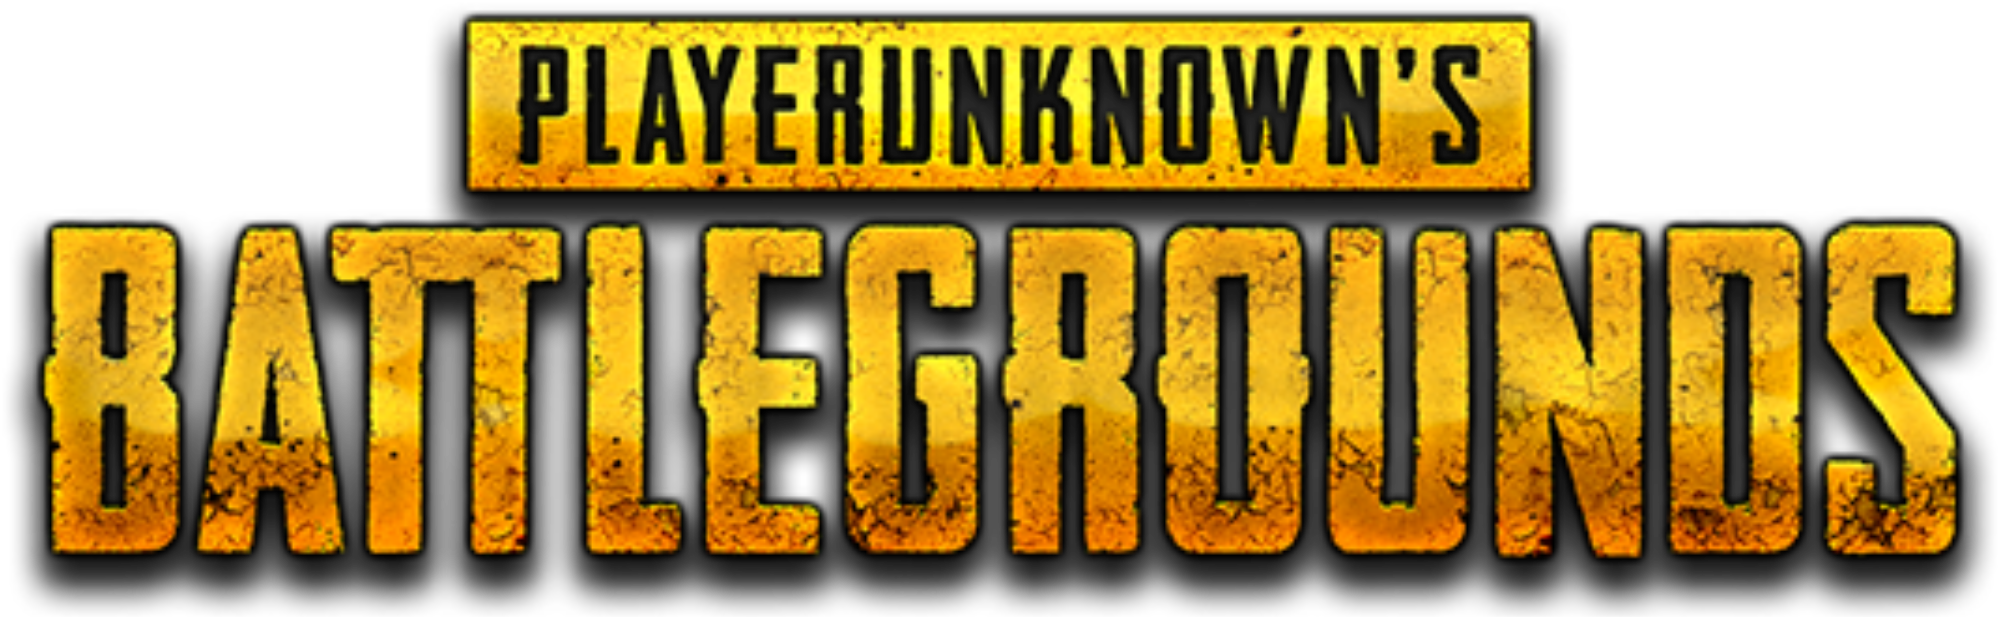 Will Player Unkown's Battlegrounds work on crossplatform? — Steemkr